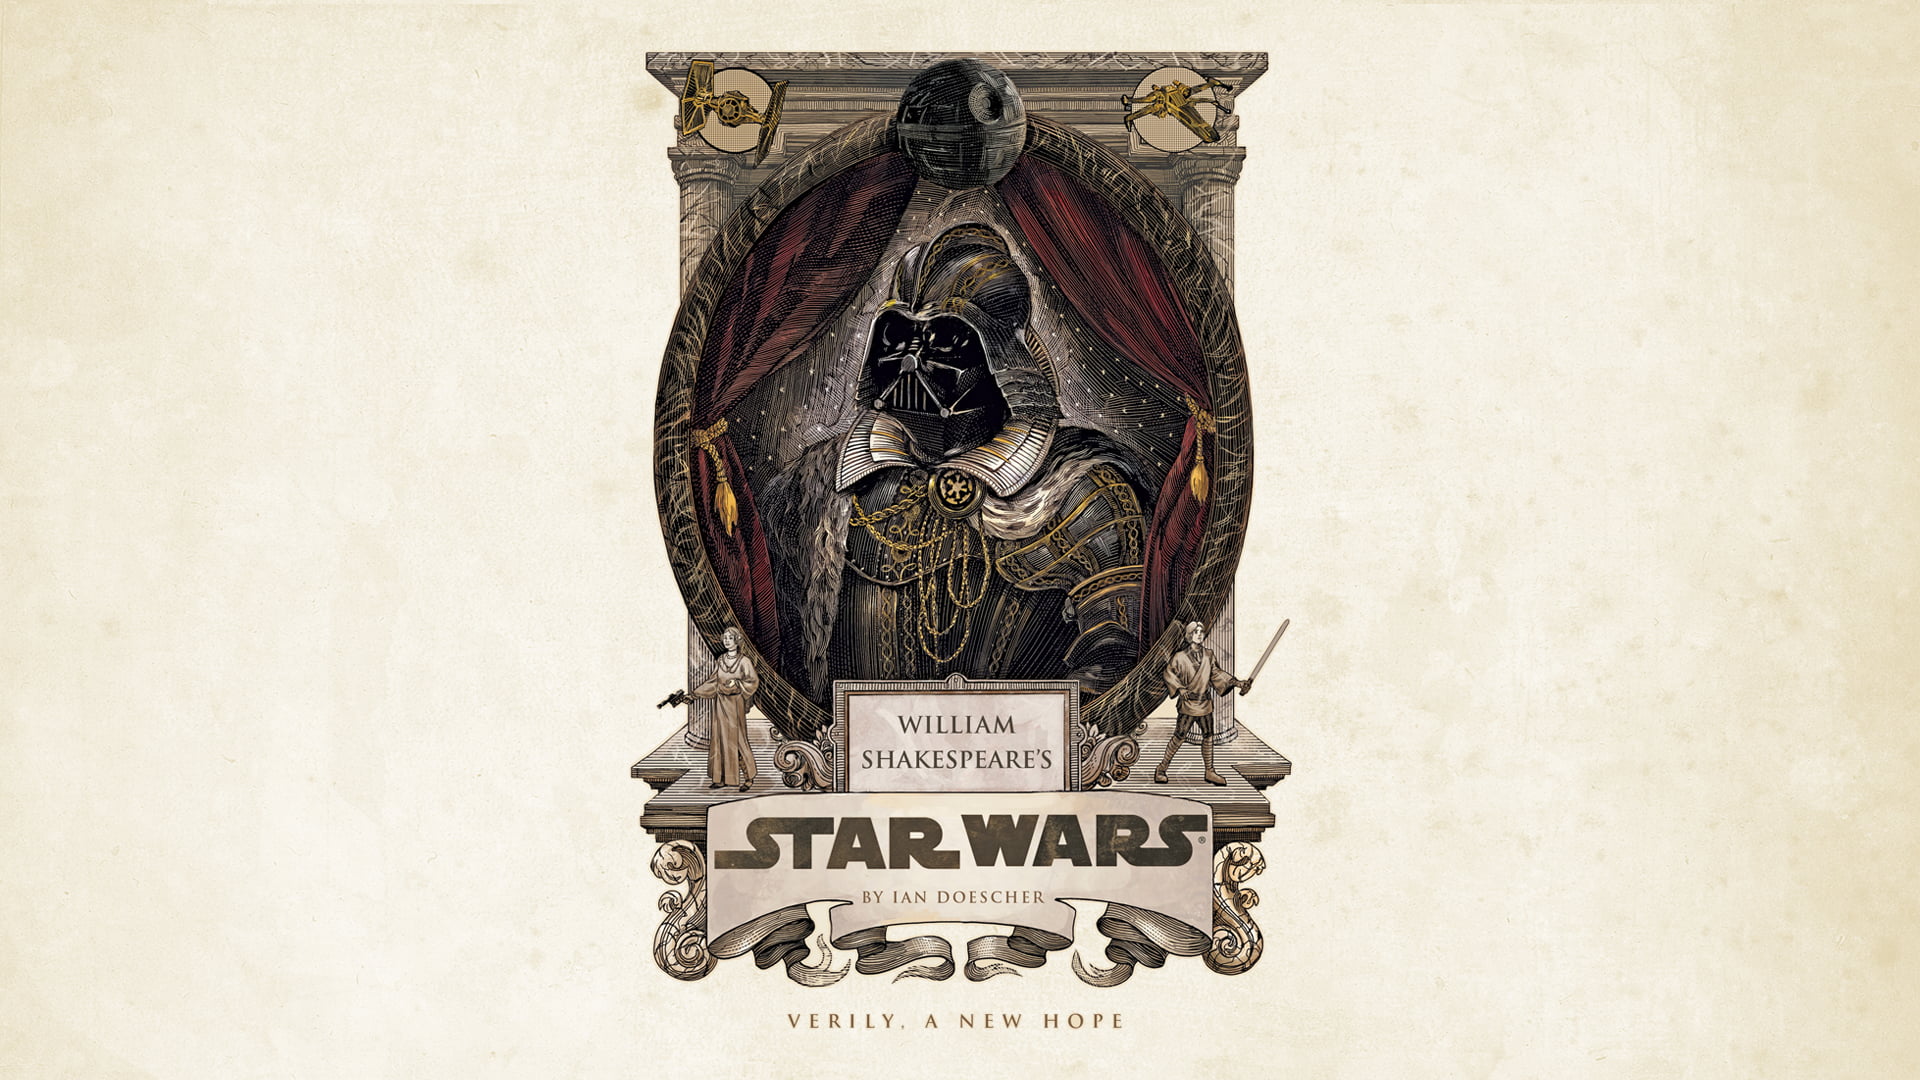 Star Wars Darth Vader illustration, Star Wars, curtains, Darth Vader